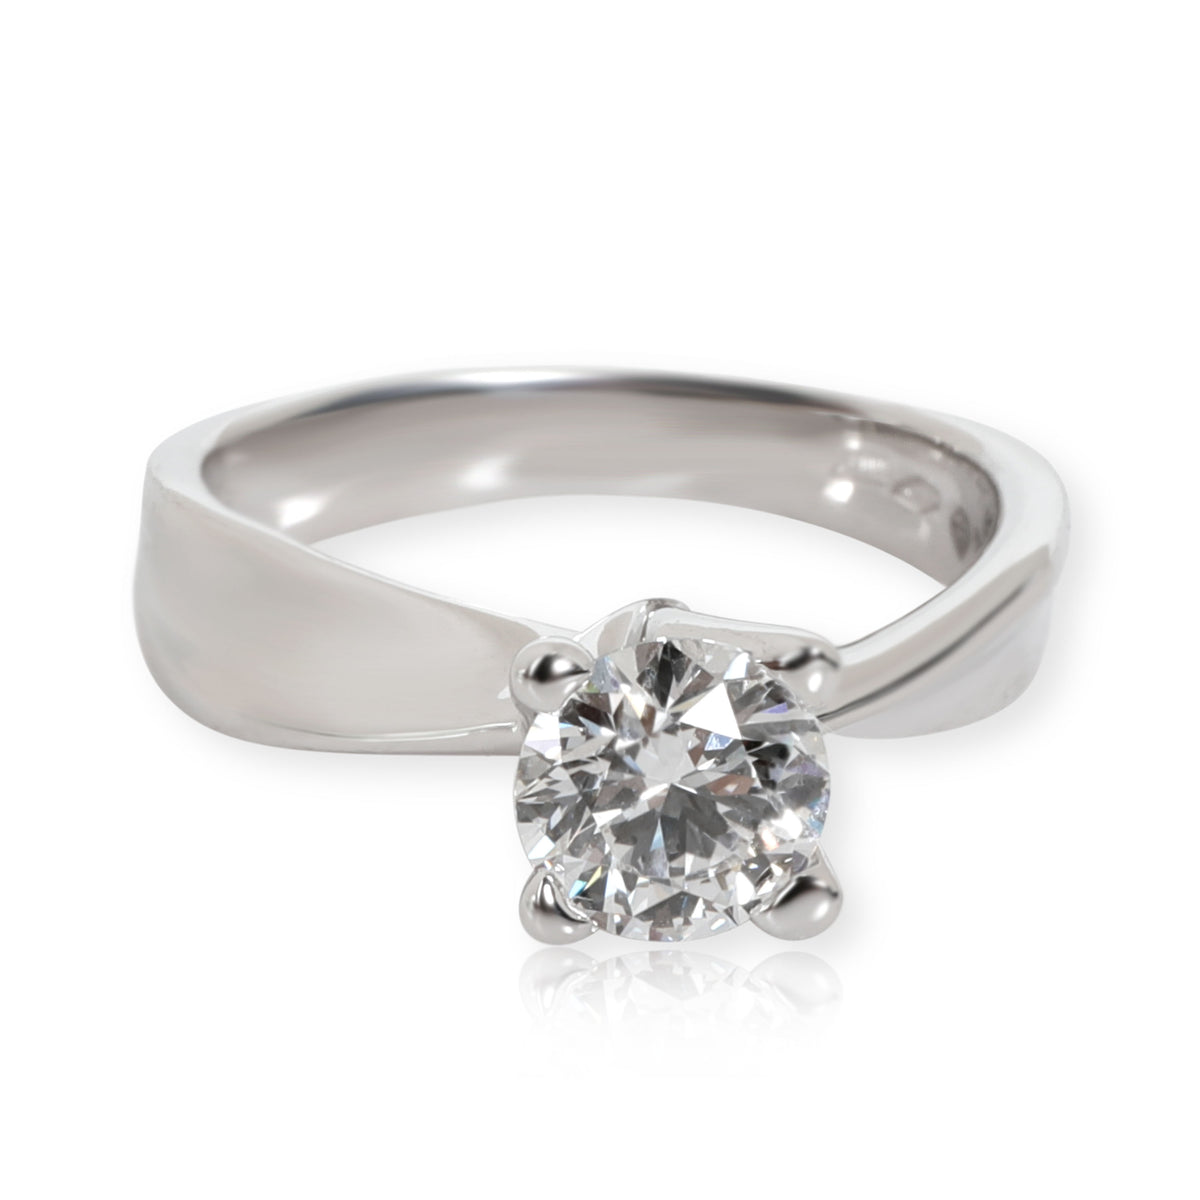 Simon G Diamond Engagement Ring in 18K White Gold GIA Certified D VS1 0.91 CTW